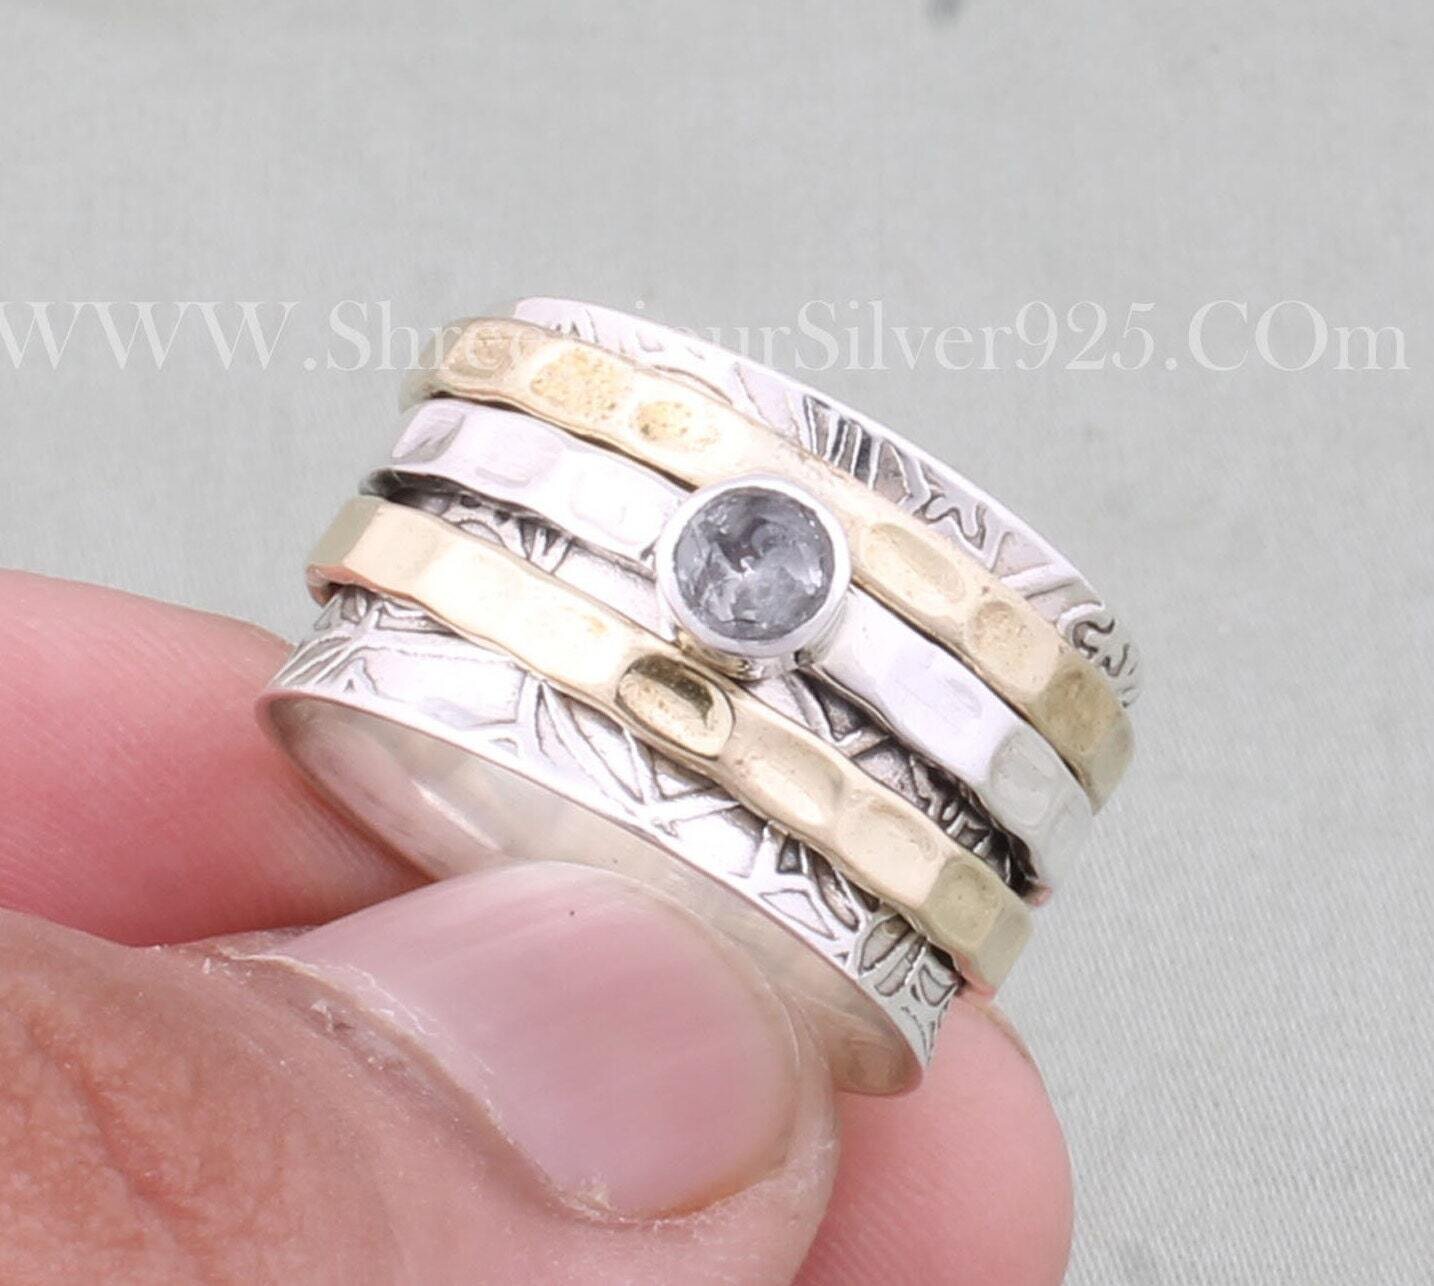 925 Sterling Silver & Brass Natural Crystal Quartz Spinner Rings, Handmade Hammered Two Tone Designer Carved Spinner Rings, Gift For Women